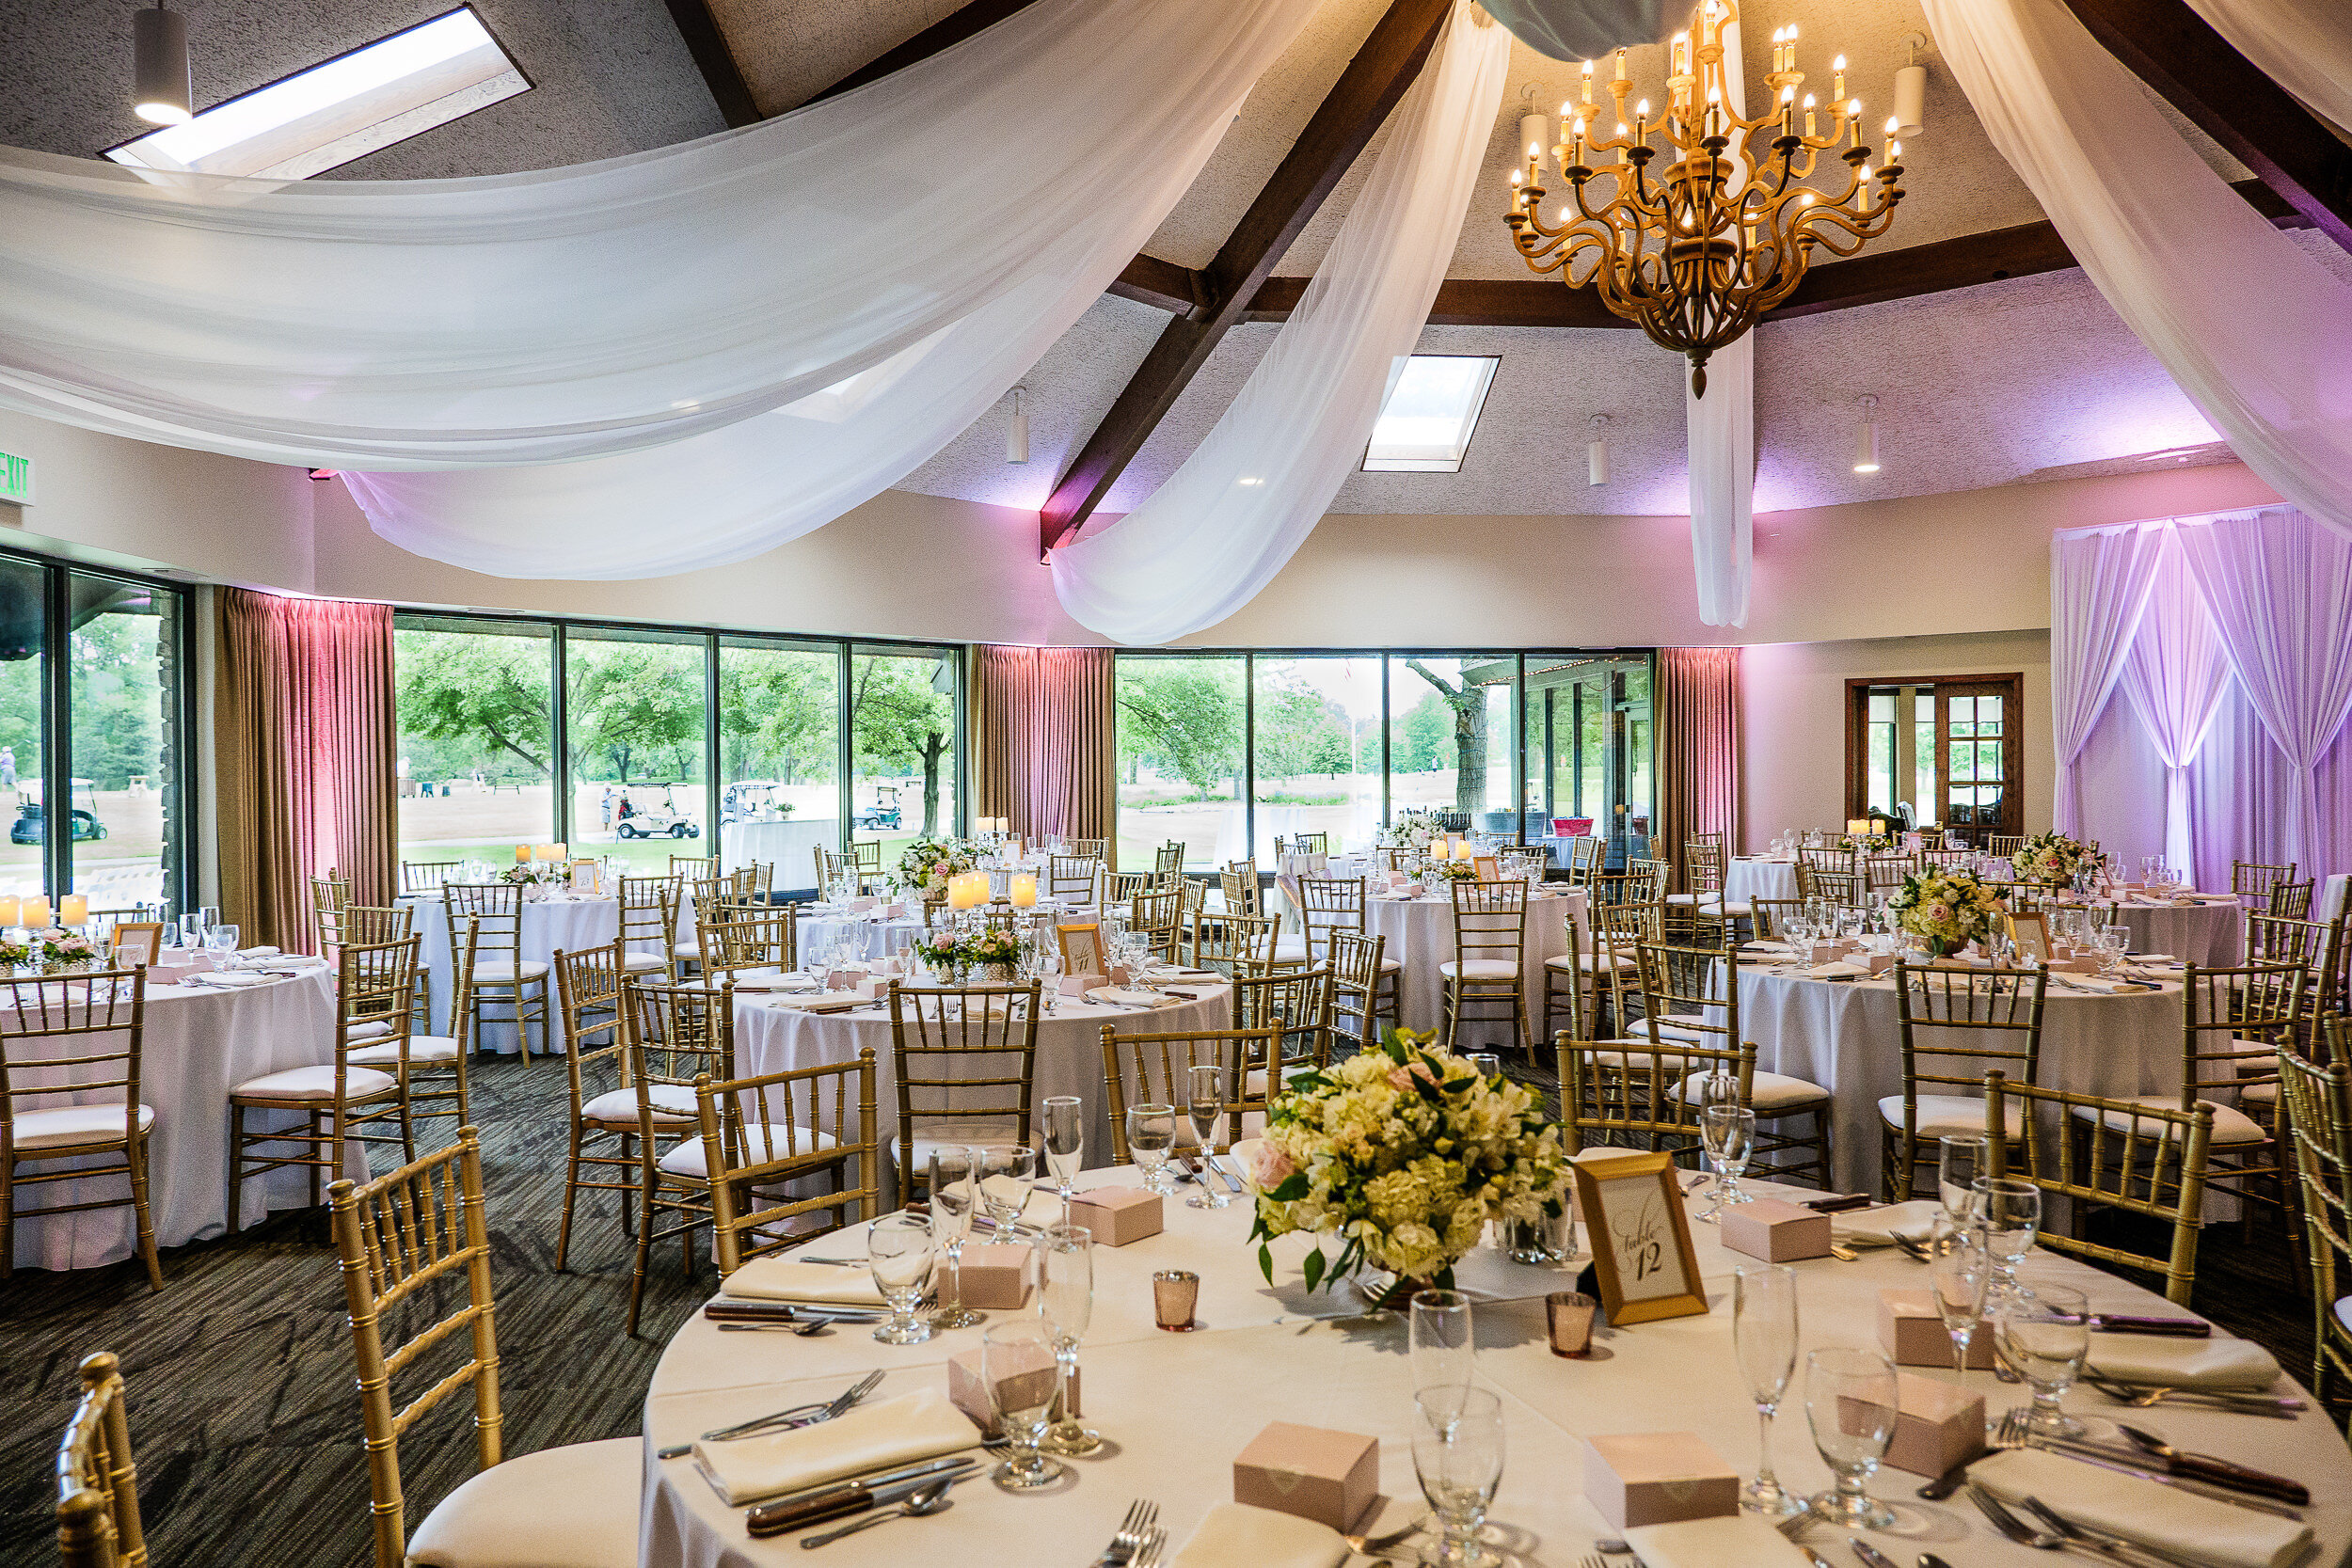 Briar Ridge Country Club Wedding Venue - Northwest Indiana Wedding Photographer Region Weddings